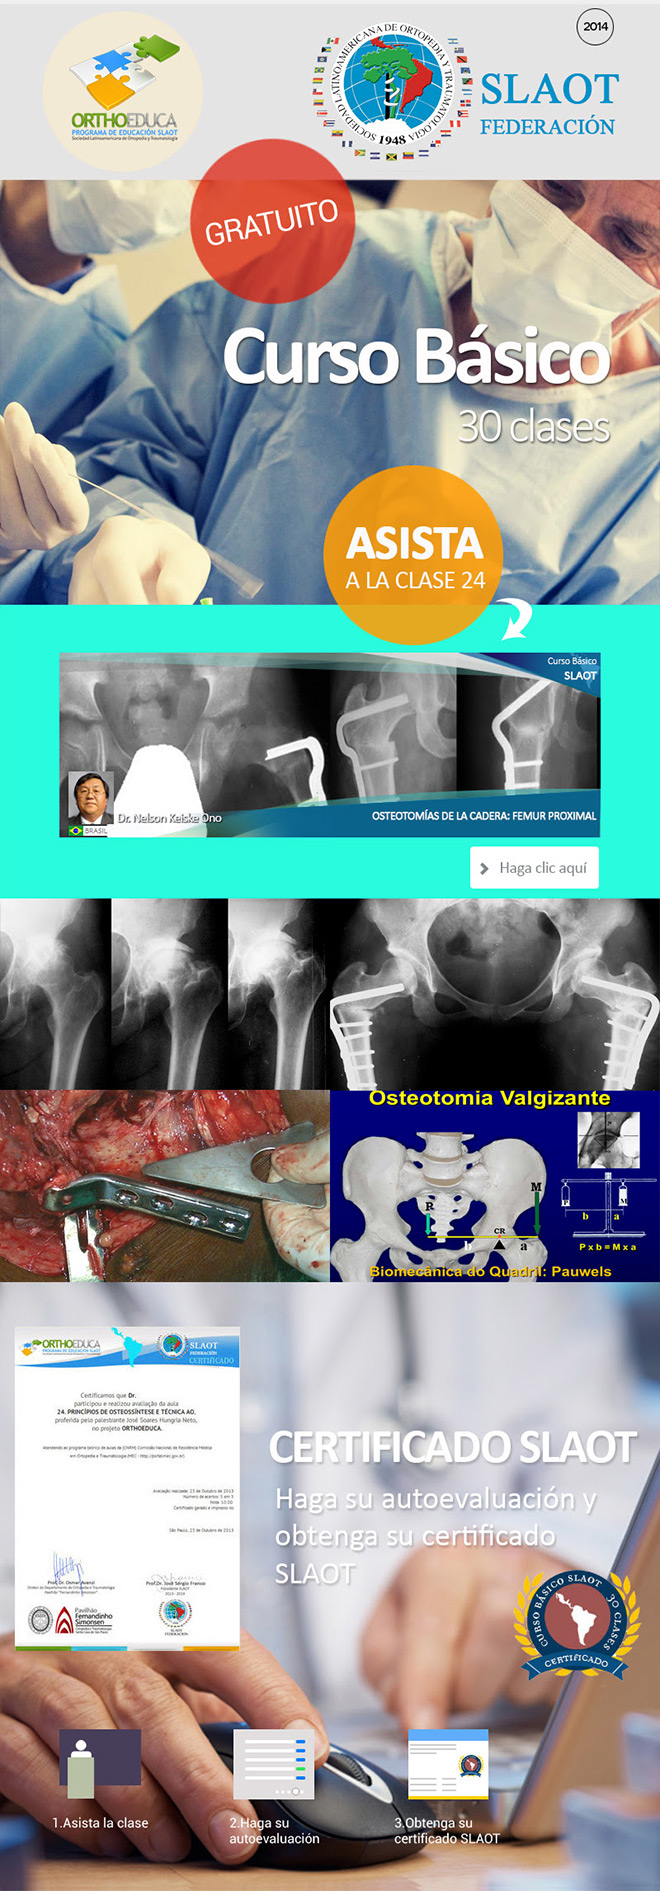 Asista a La Clase 24: Osteotomías de la Cadera: Femur Proximal